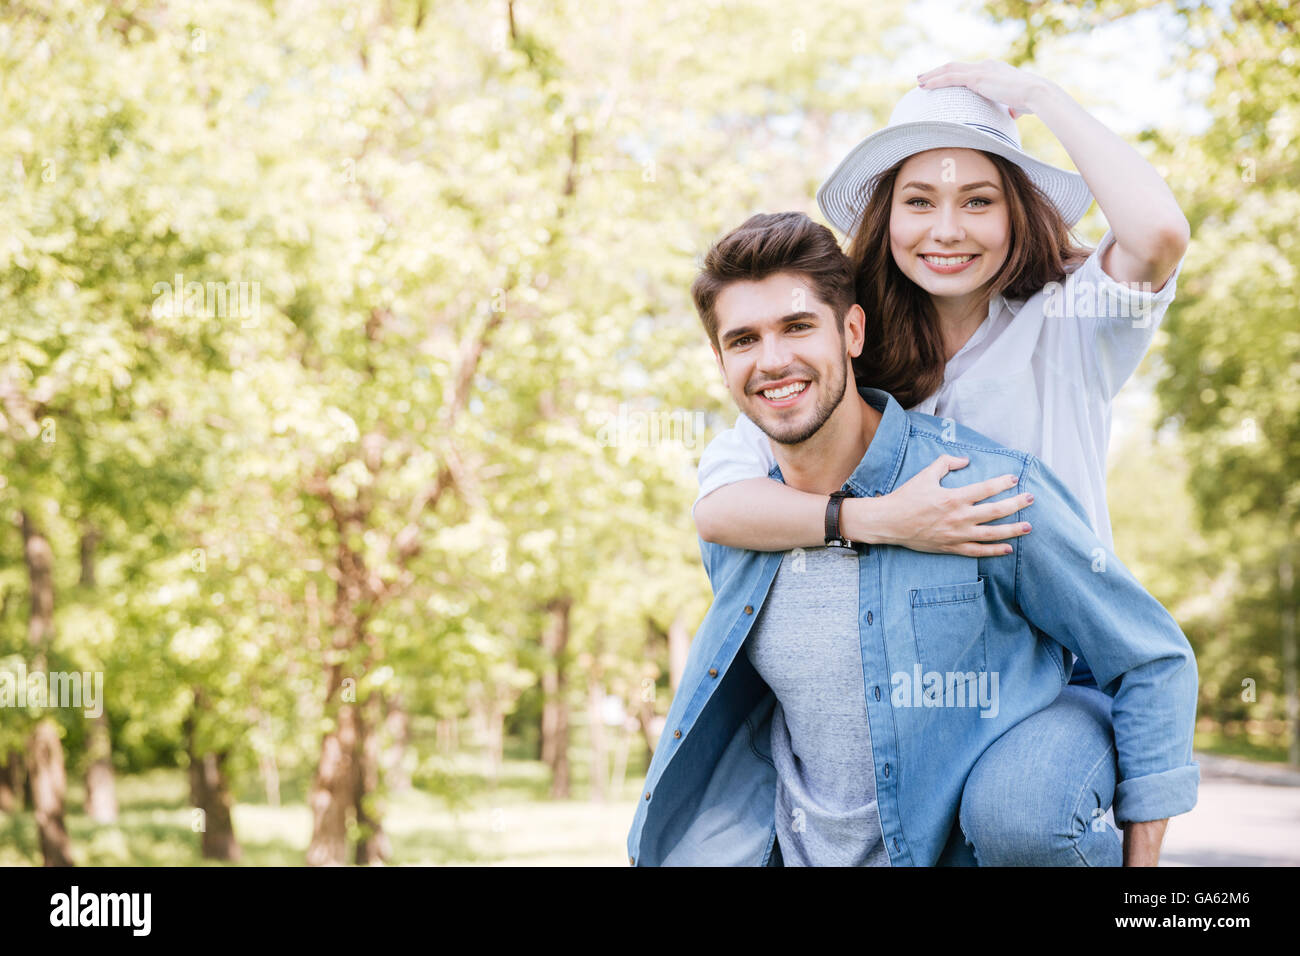 Porträt eines glücklichen jungen lächelnd Paares Spaß im Freien im park Stockfoto